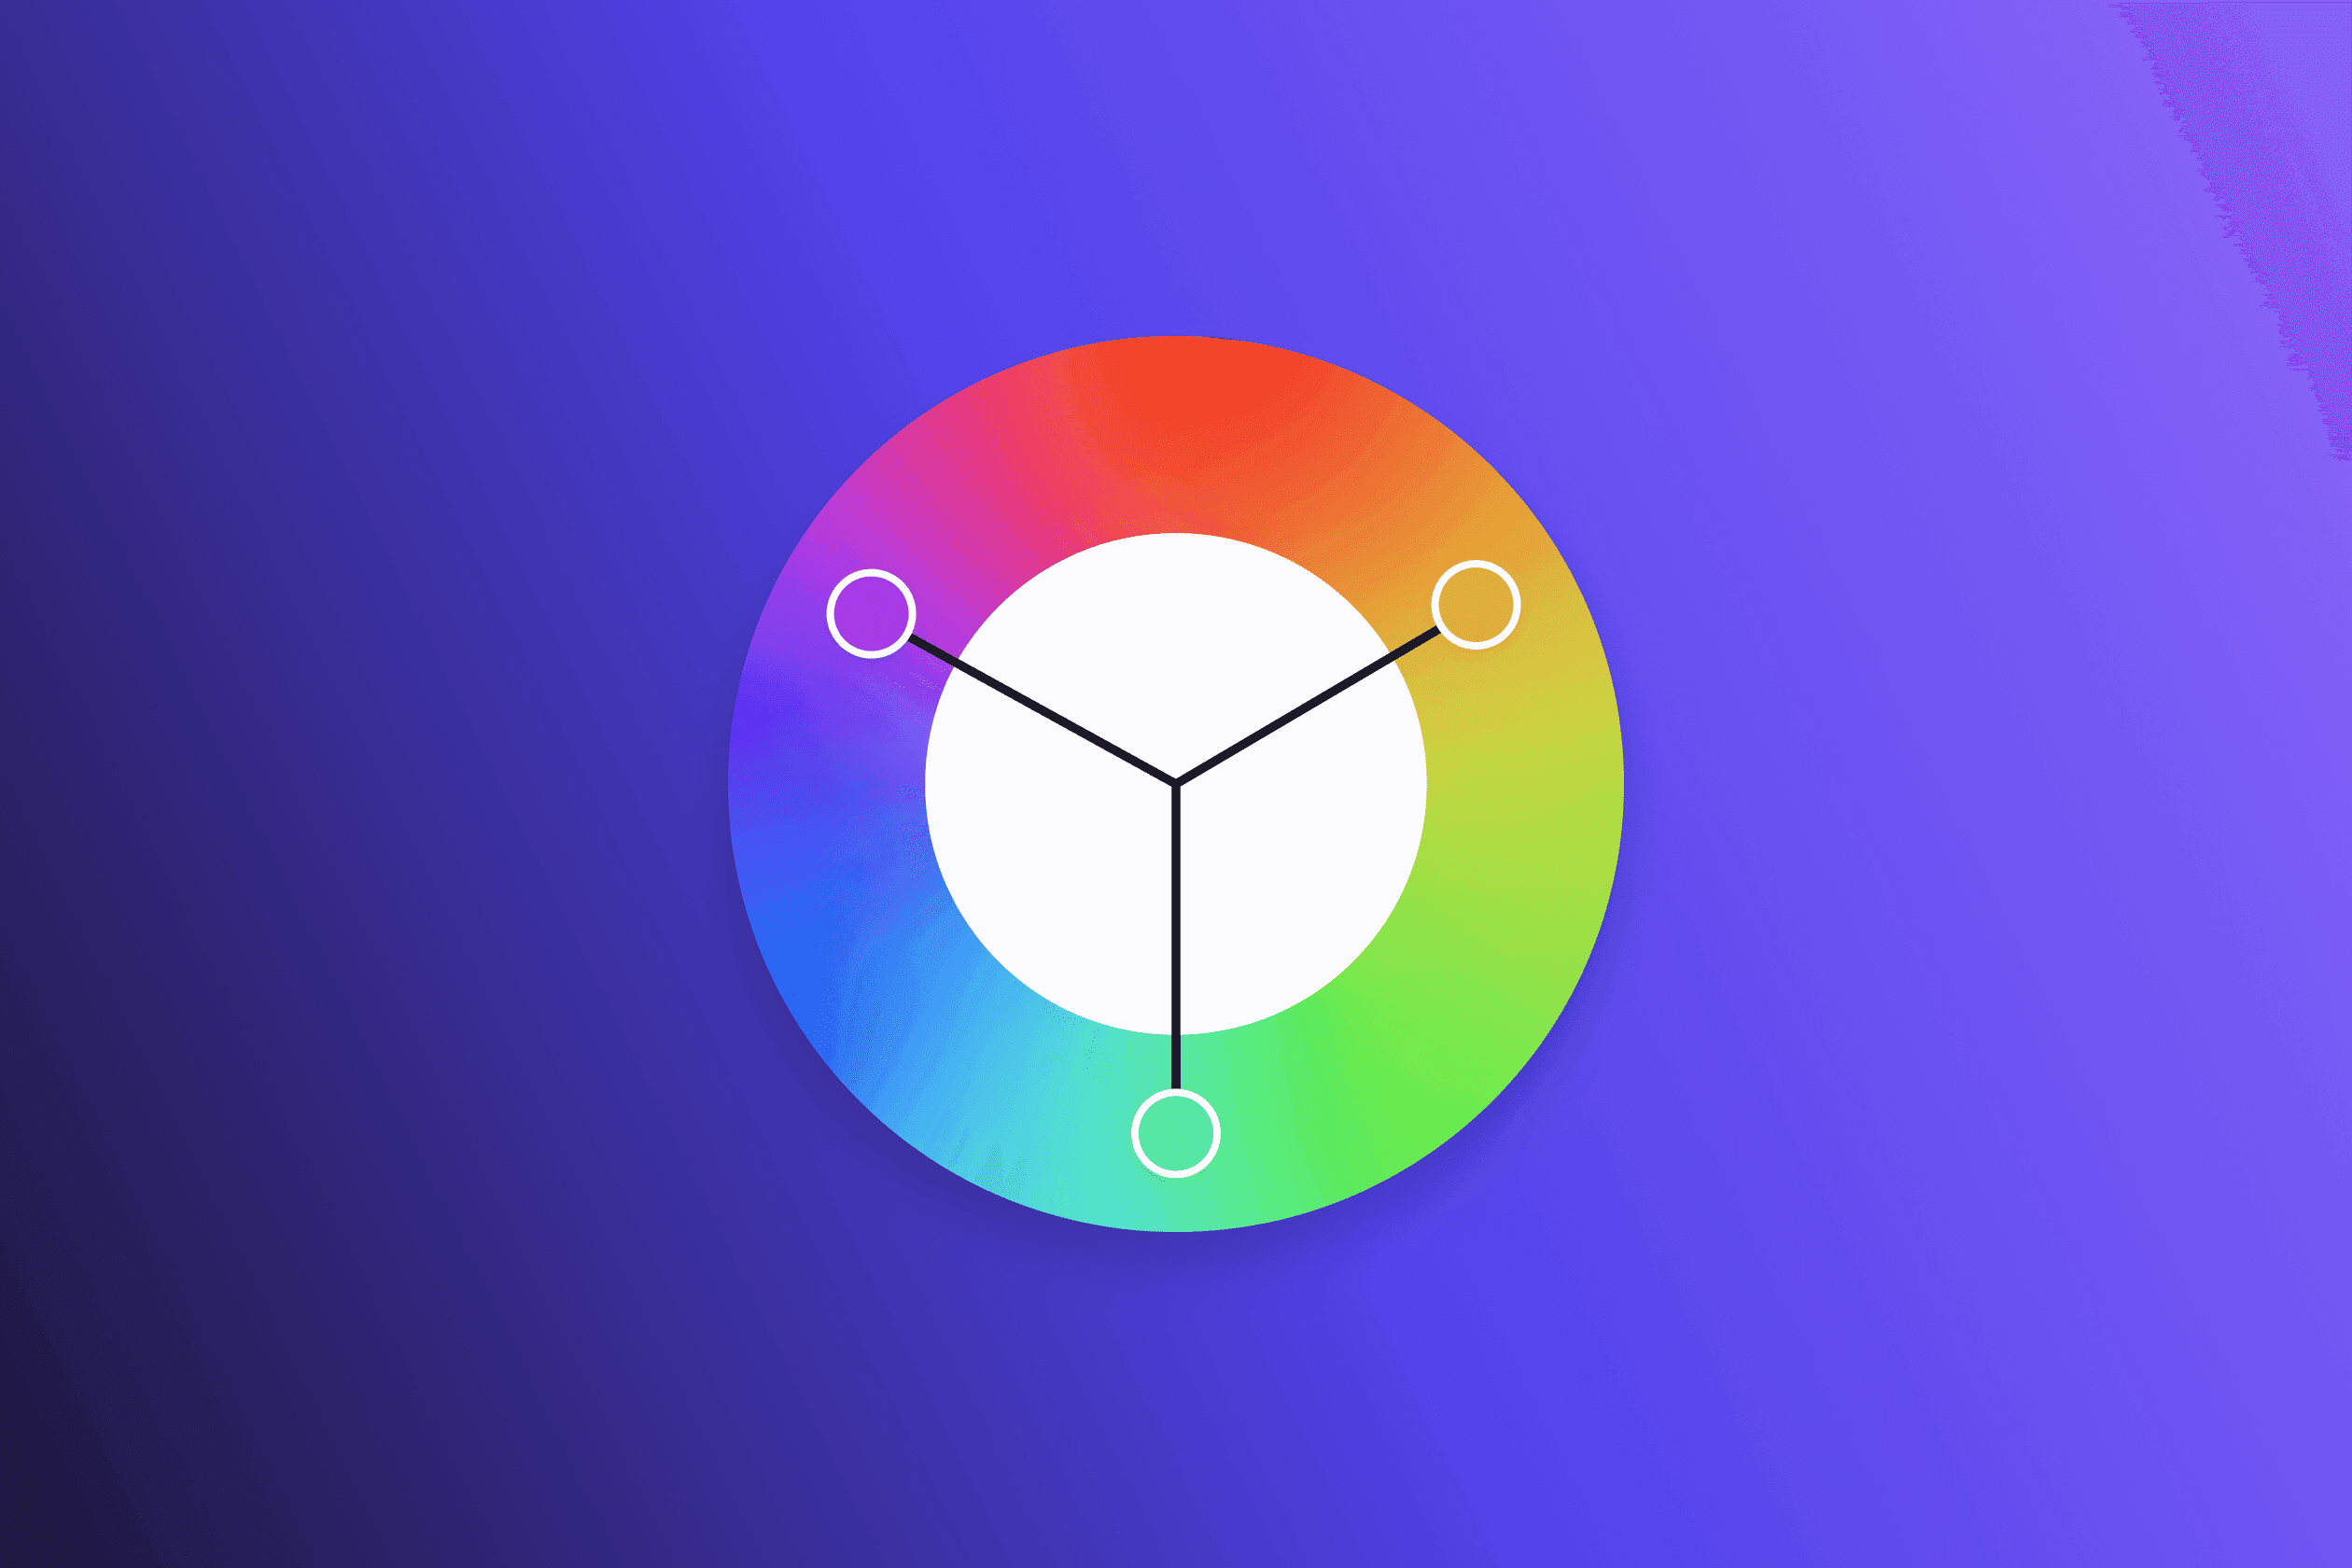 Color wheel with triadic color scheme